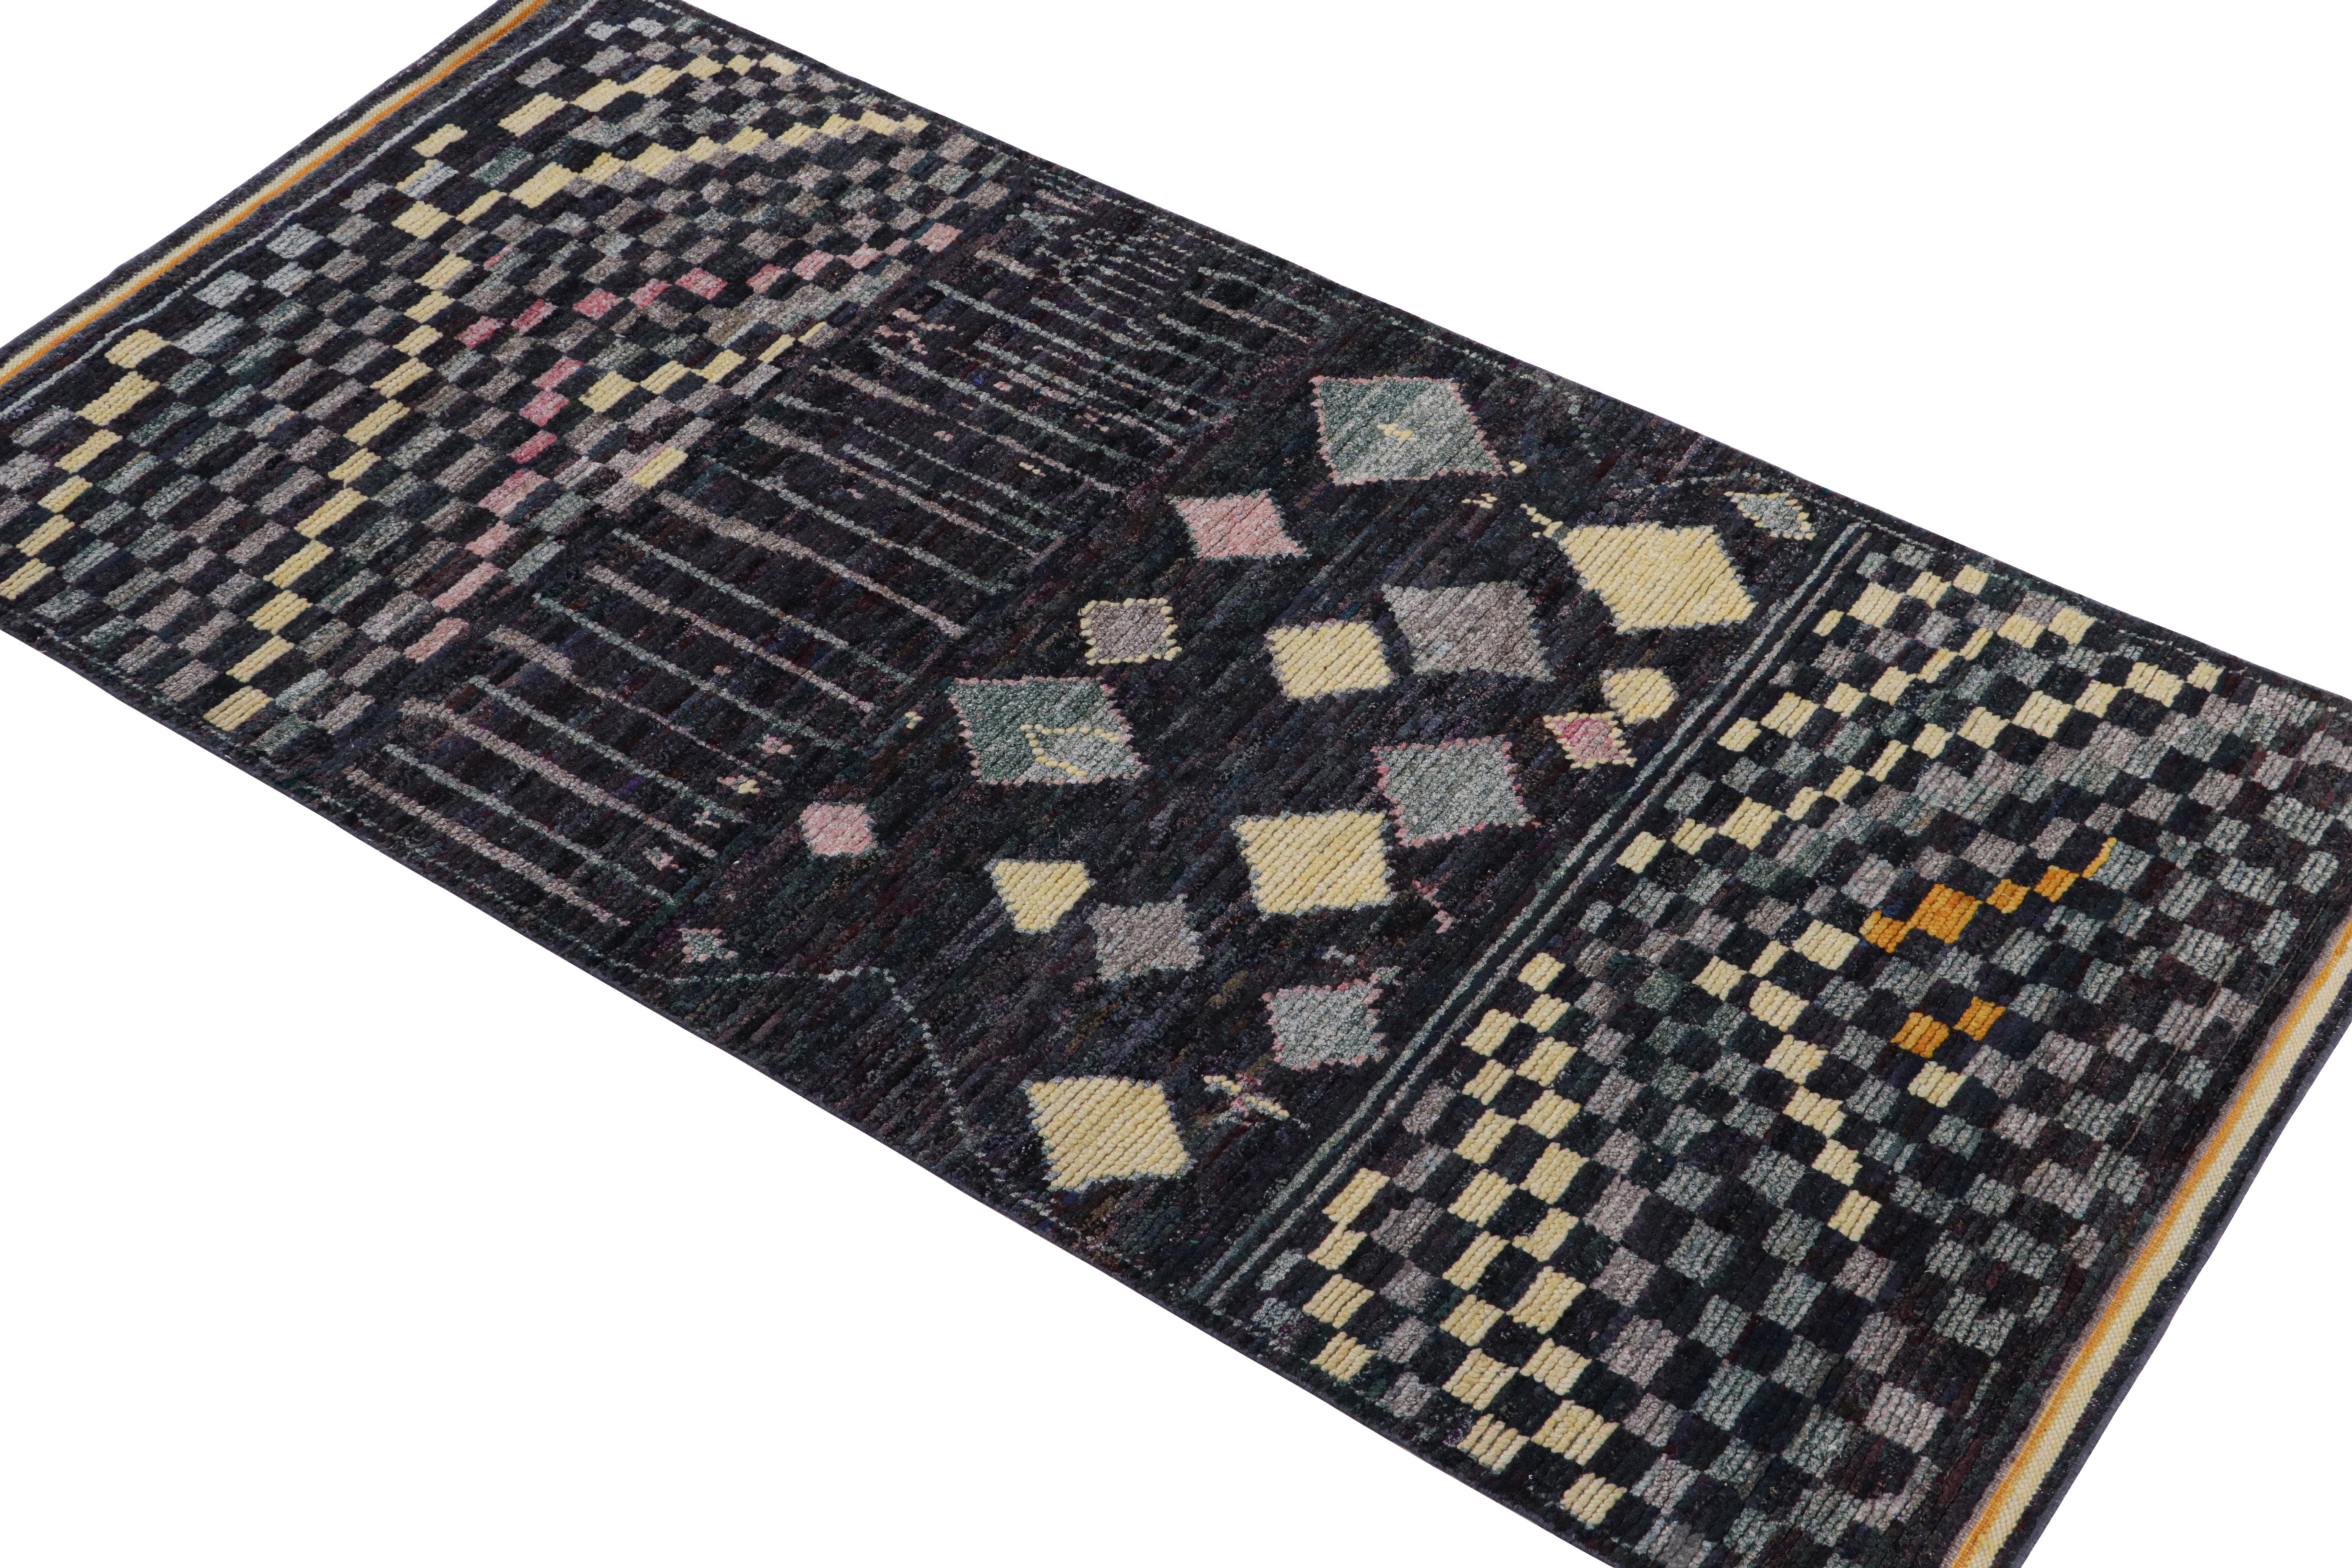 Ce tapis contemporain 4x8 est le dernier né de la nouvelle collection marocaine de Rug & Kilim, une version audacieuse de ce style emblématique. Noué à la main dans un mélange de laine, de soie et de coton.
Plus loin dans la conception :
Le design